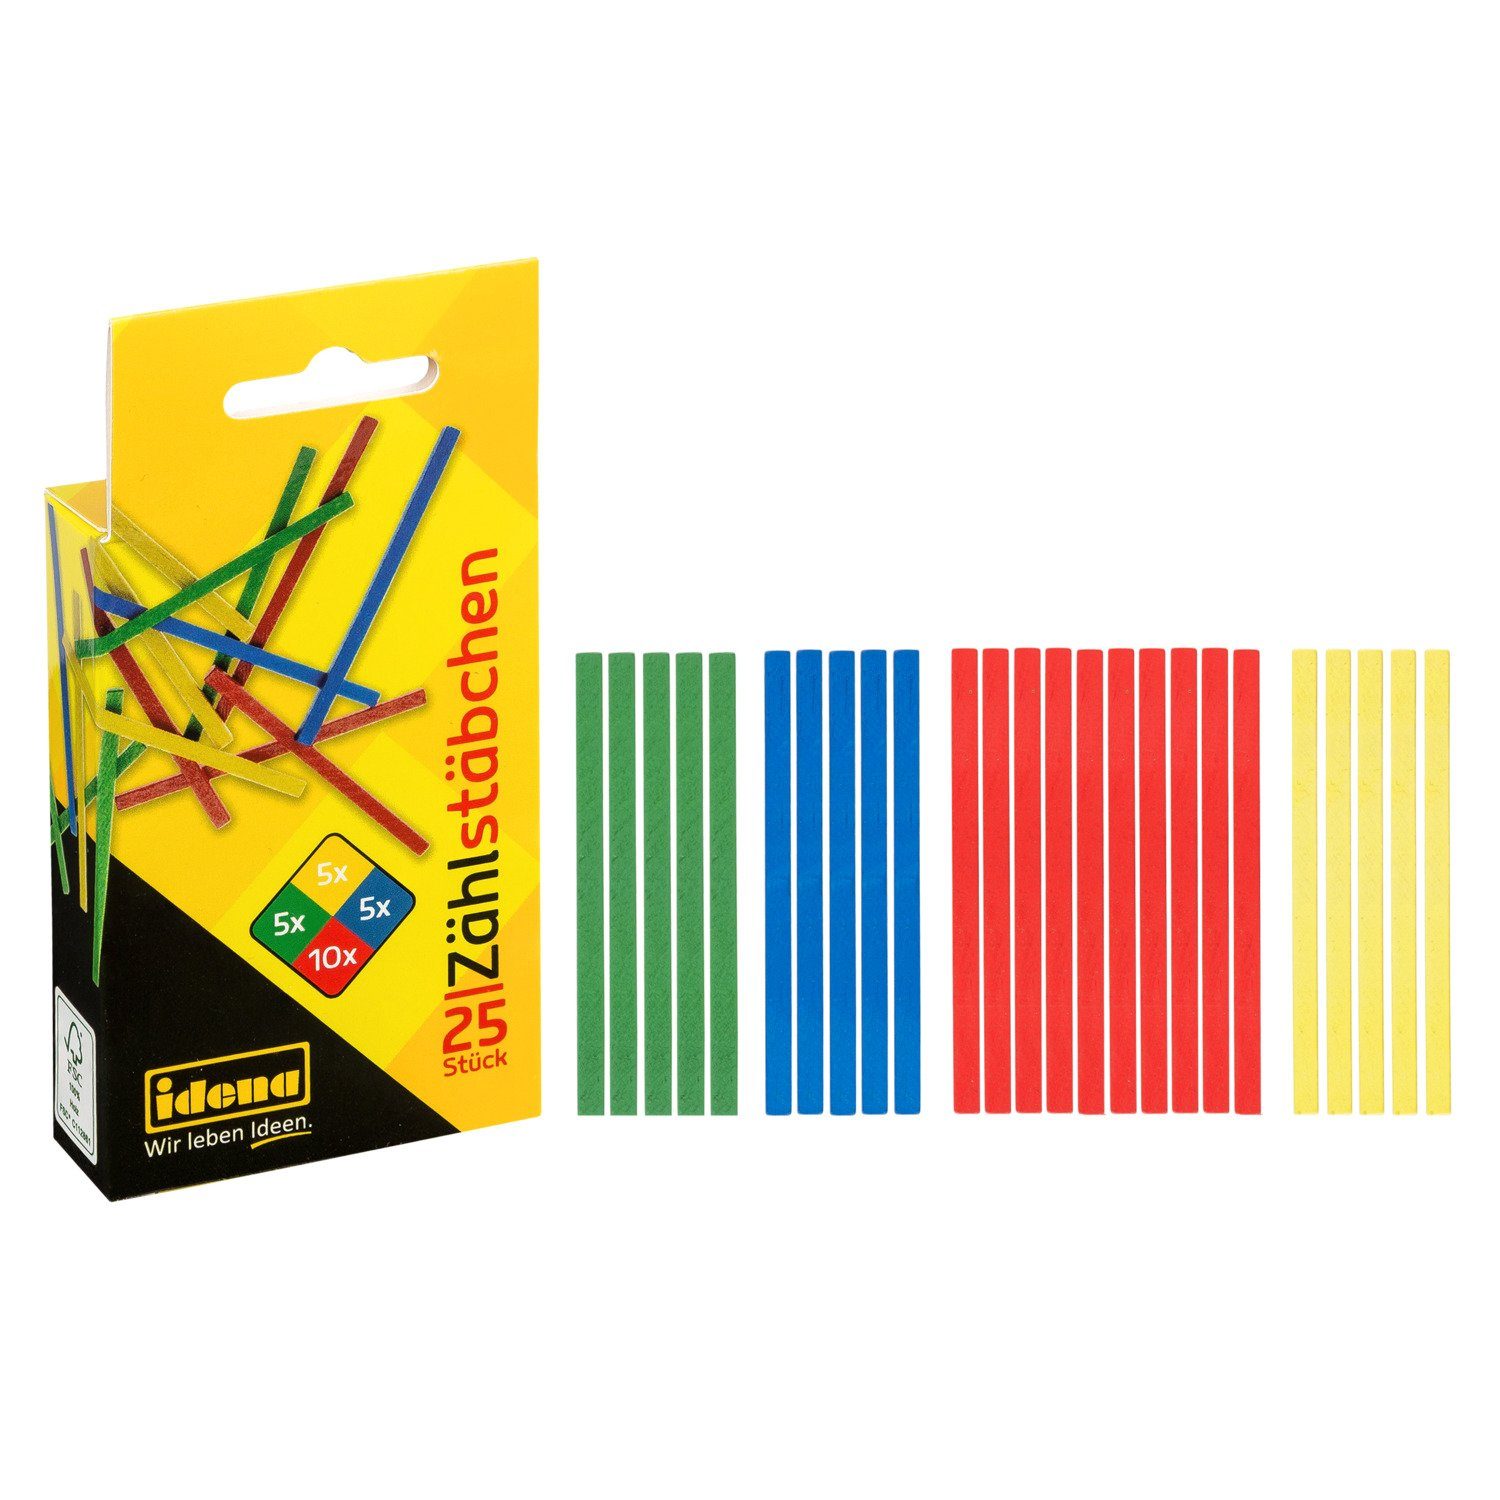 Idena Lernspielzeug Idena 20101 - Zählstäbchen aus Holz, 25er Packung, farbig sortiert